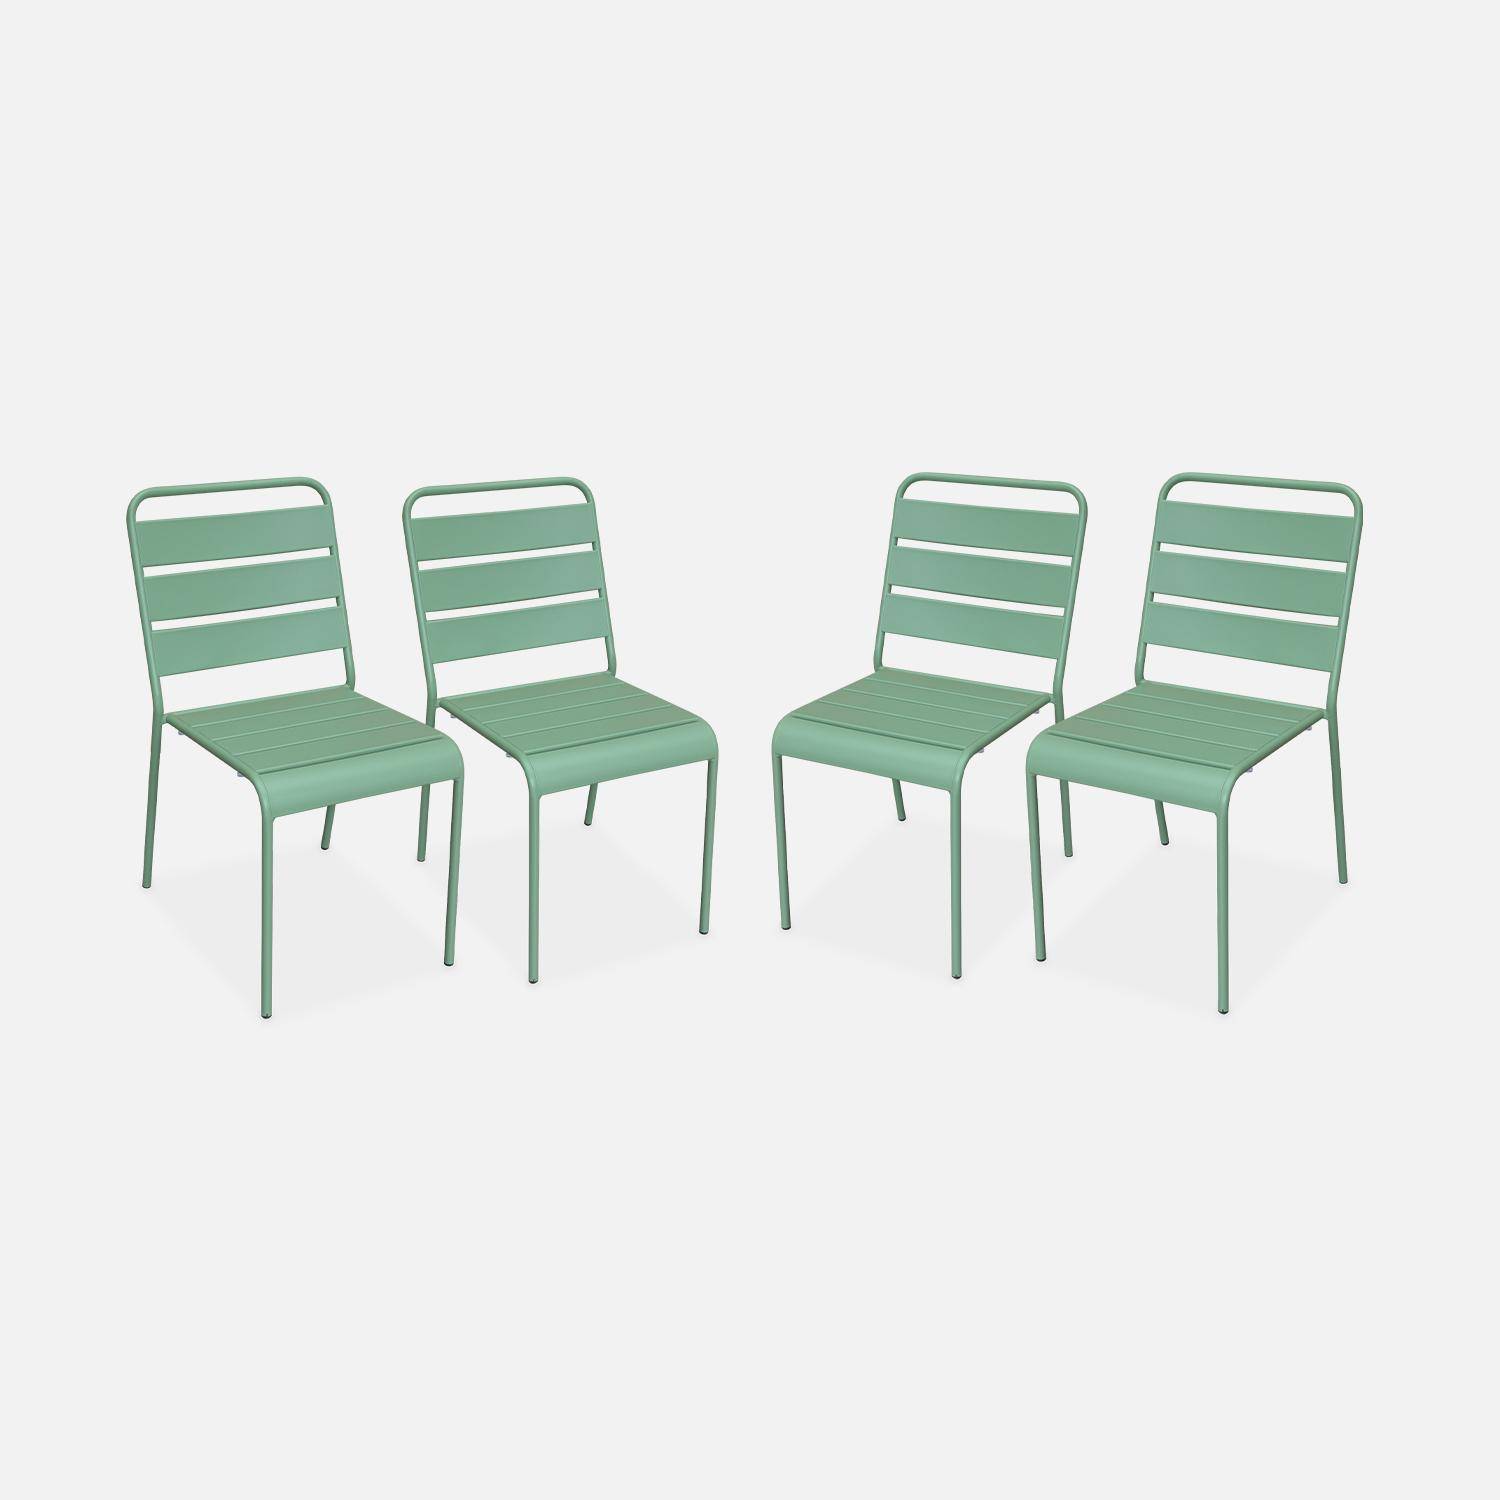 Set van 4 stapelbare metalen stoelen voor binnen en buiten, roestbestendige lak in jadegroen Photo1